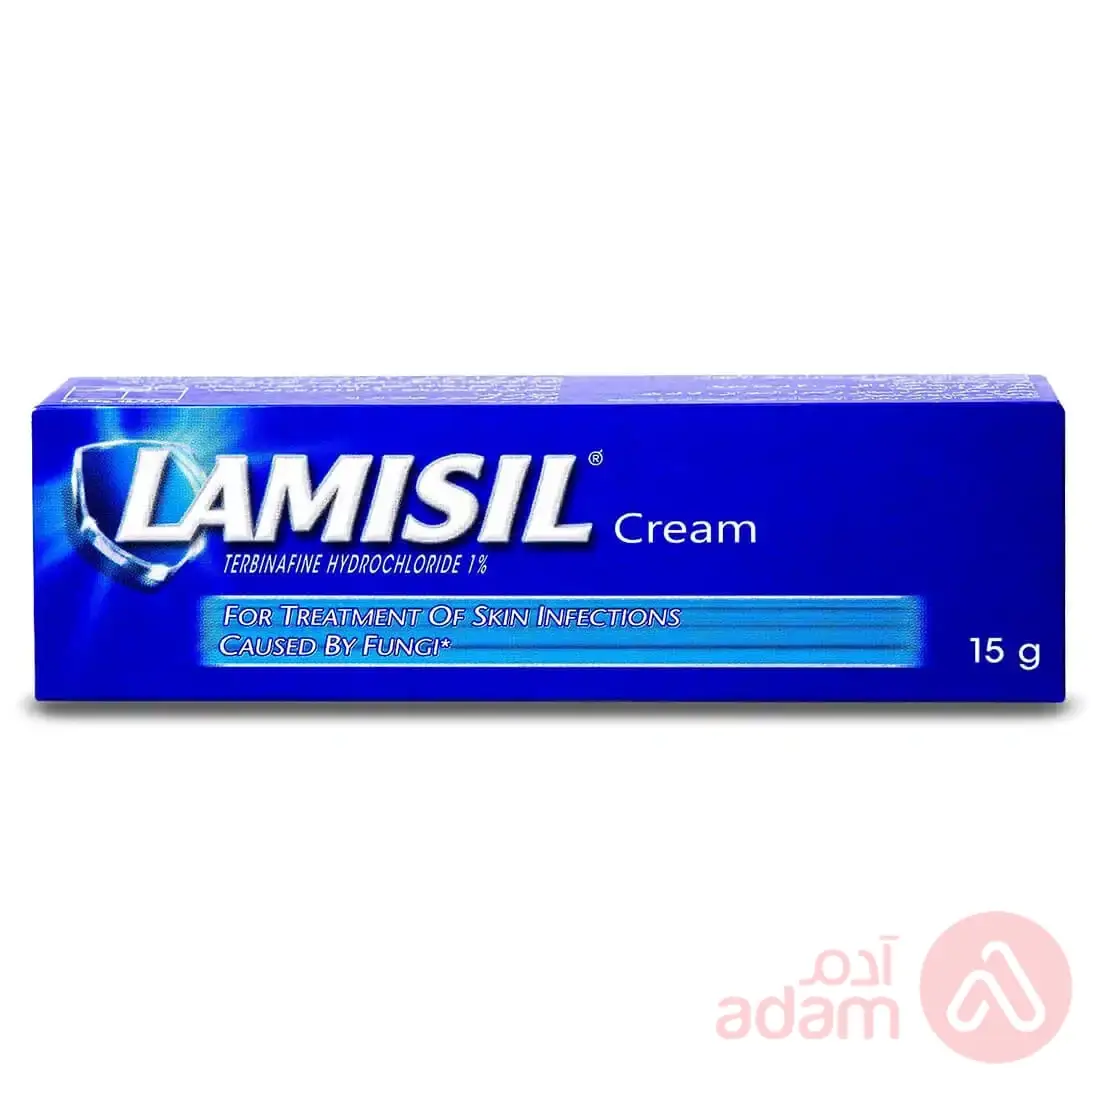 Lamisil 1% Cream | 15G